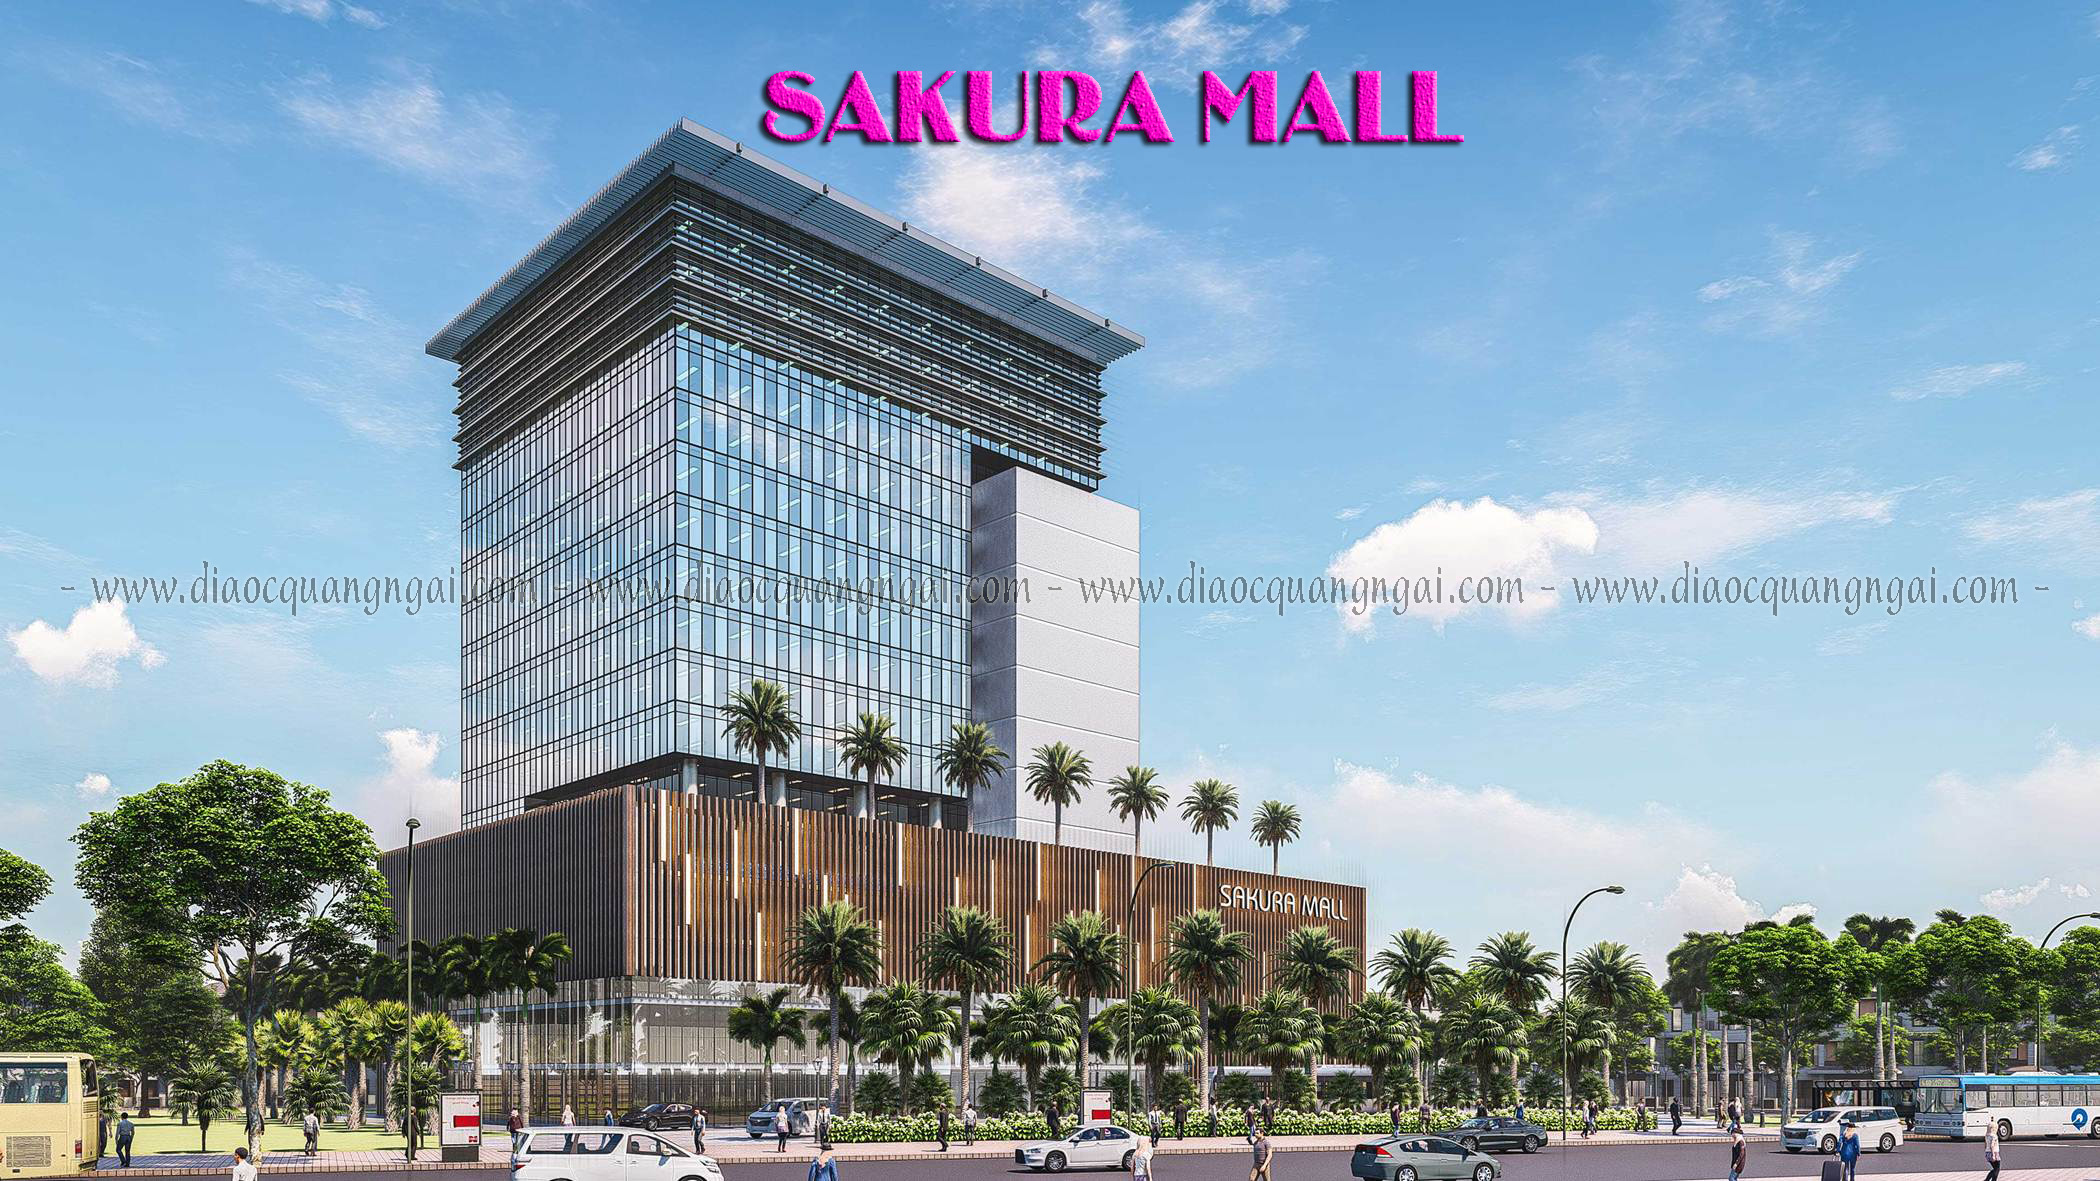 Trung tâm thương mại Sakura Mall tại dự án mang đến không gian mua sắm, giải trí hiện đại bậc nhất khu vực đông Quảng Ngãi